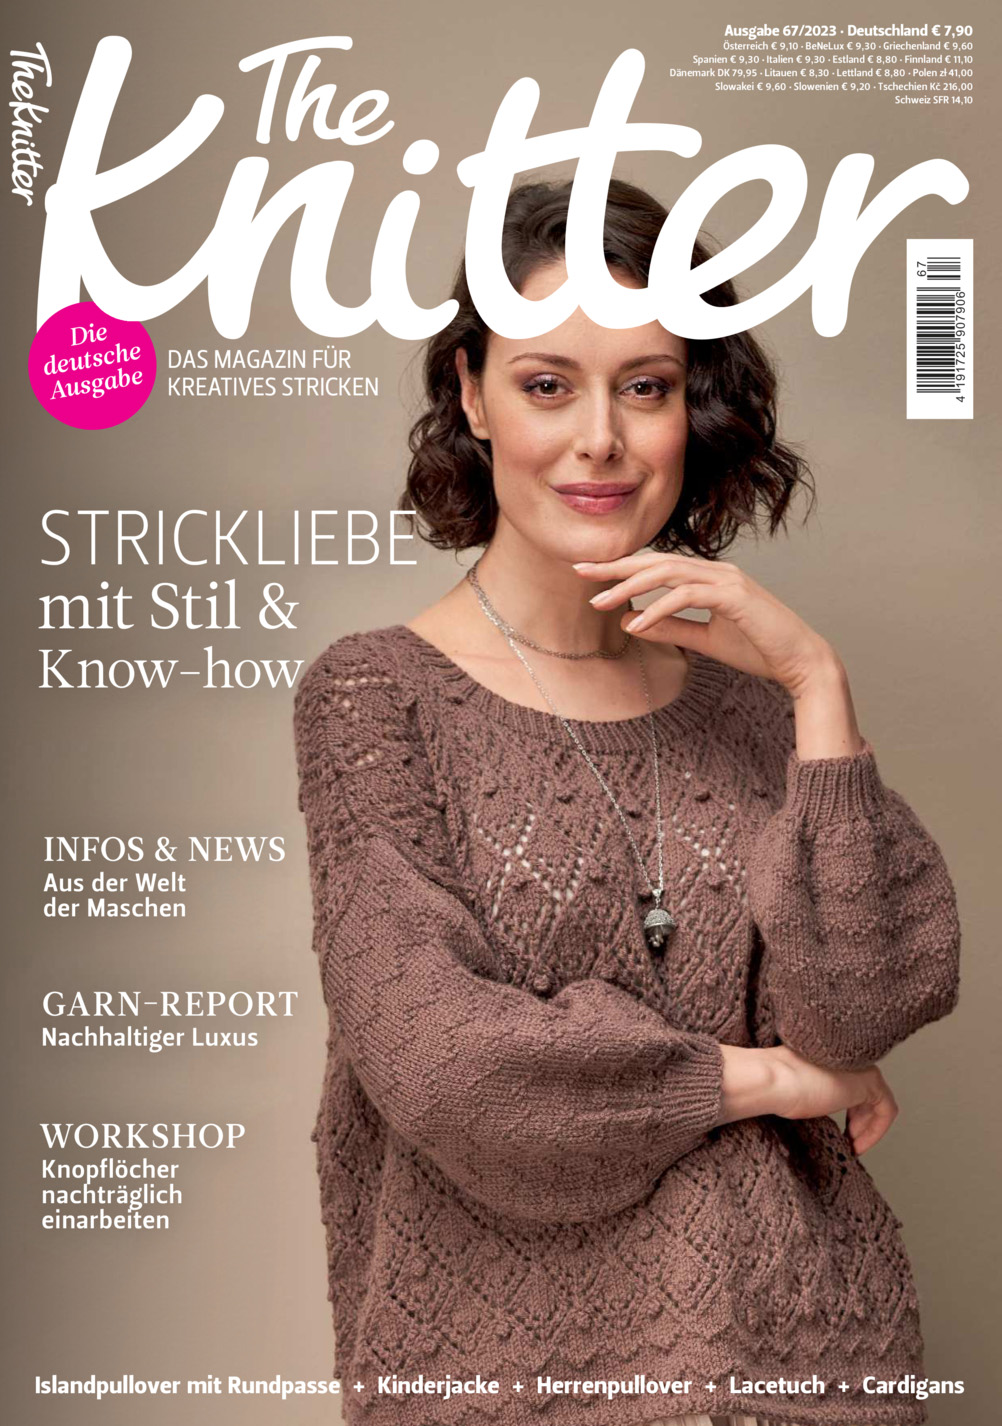 The Knitter 67/2023 - Strickliebe mit Stil & Know-how